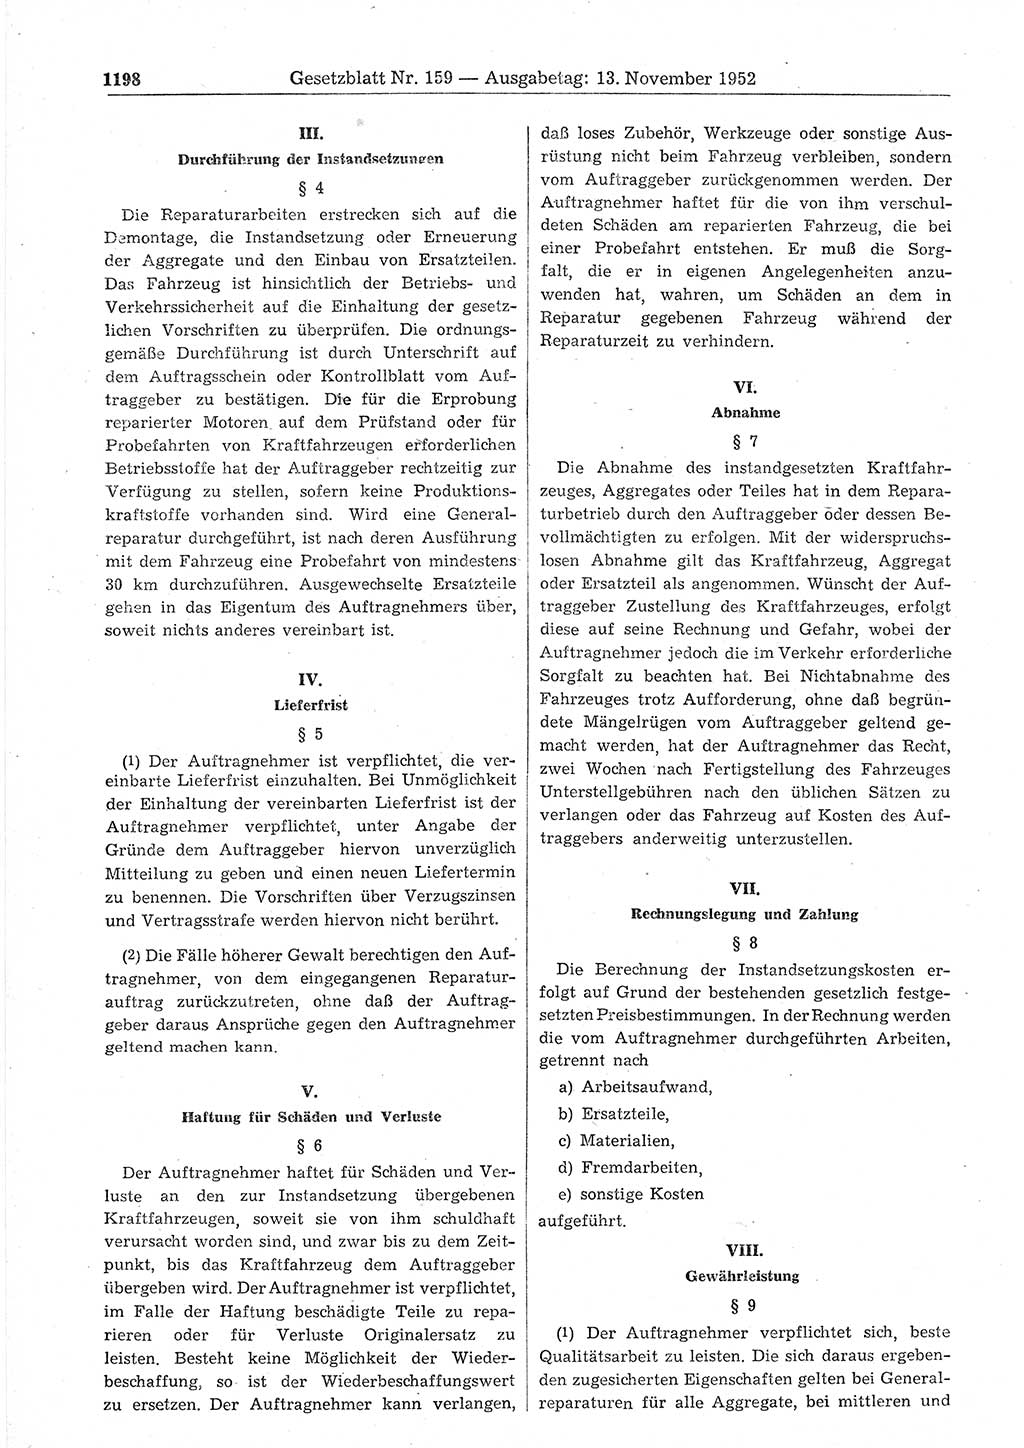 Gesetzblatt (GBl.) der Deutschen Demokratischen Republik (DDR) 1952, Seite 1198 (GBl. DDR 1952, S. 1198)